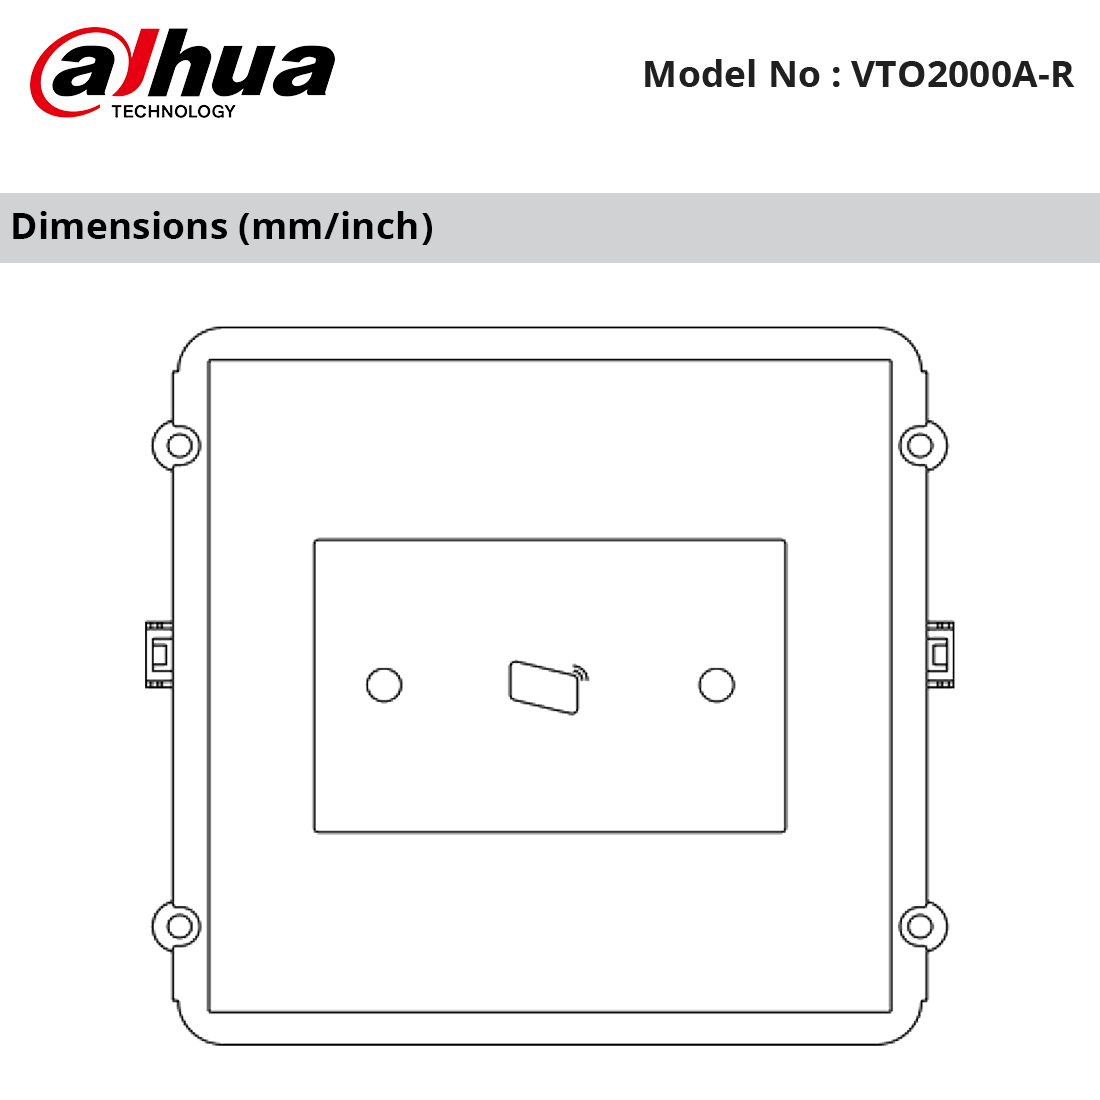 VTO2000A-R Dimensions